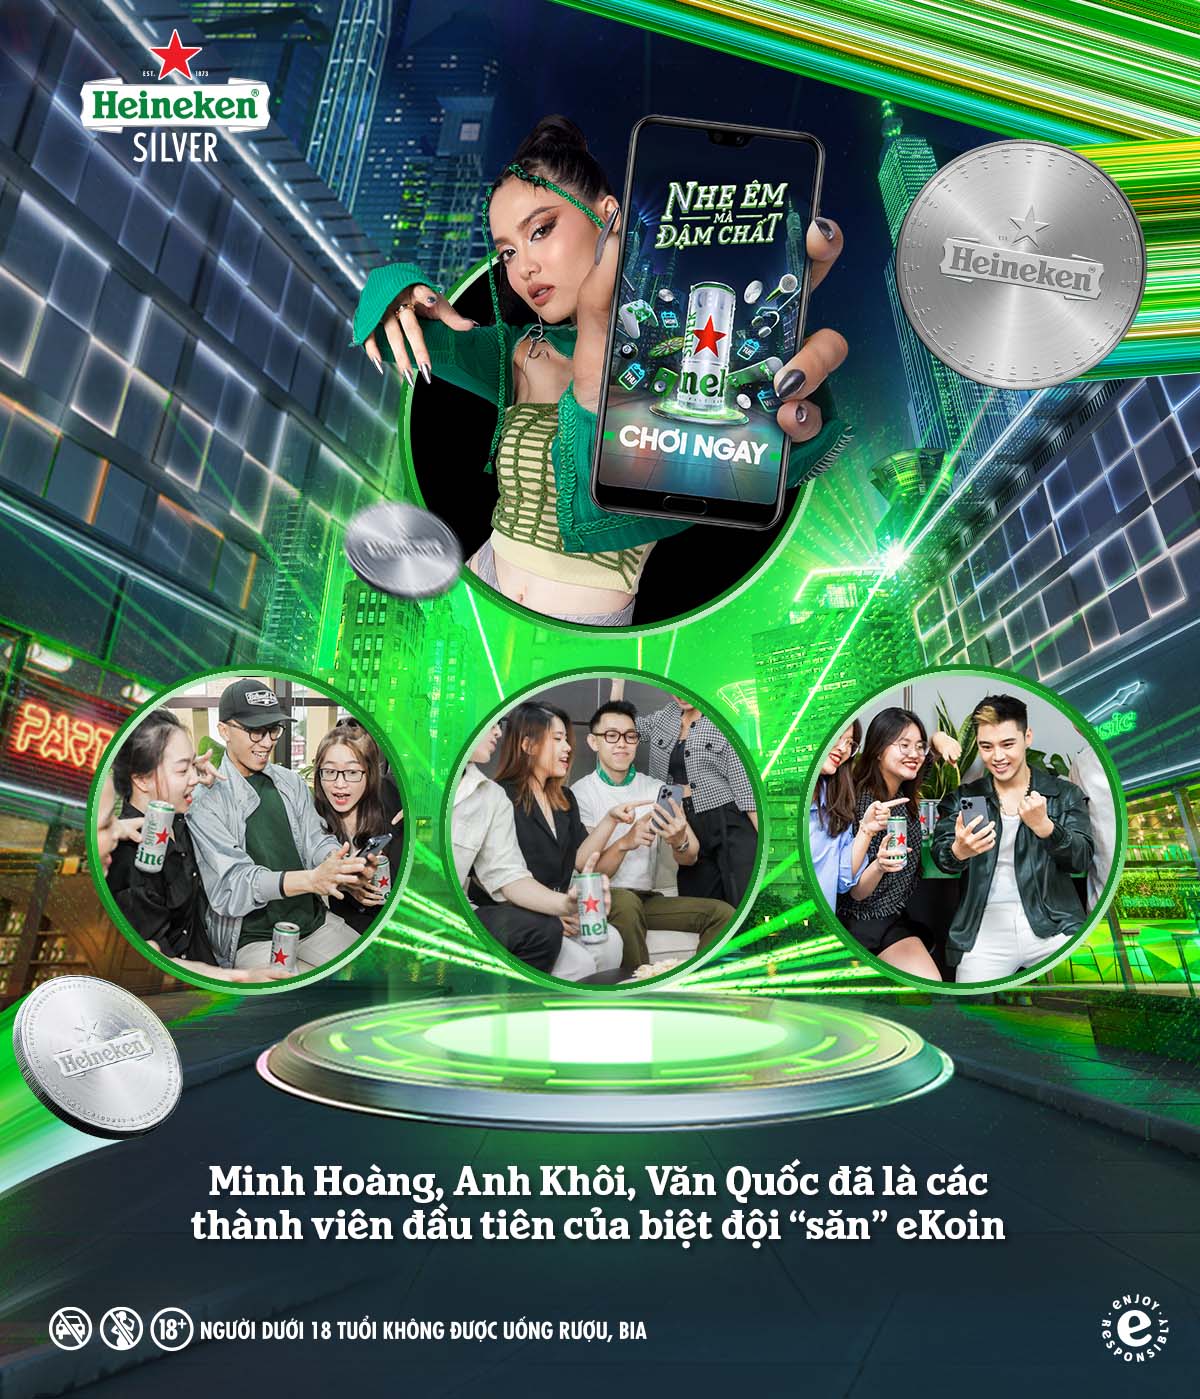 Đấu trường eKoin từ Heineken Silver chiêu mộ cao thủ với loạt quà thời thượng-5